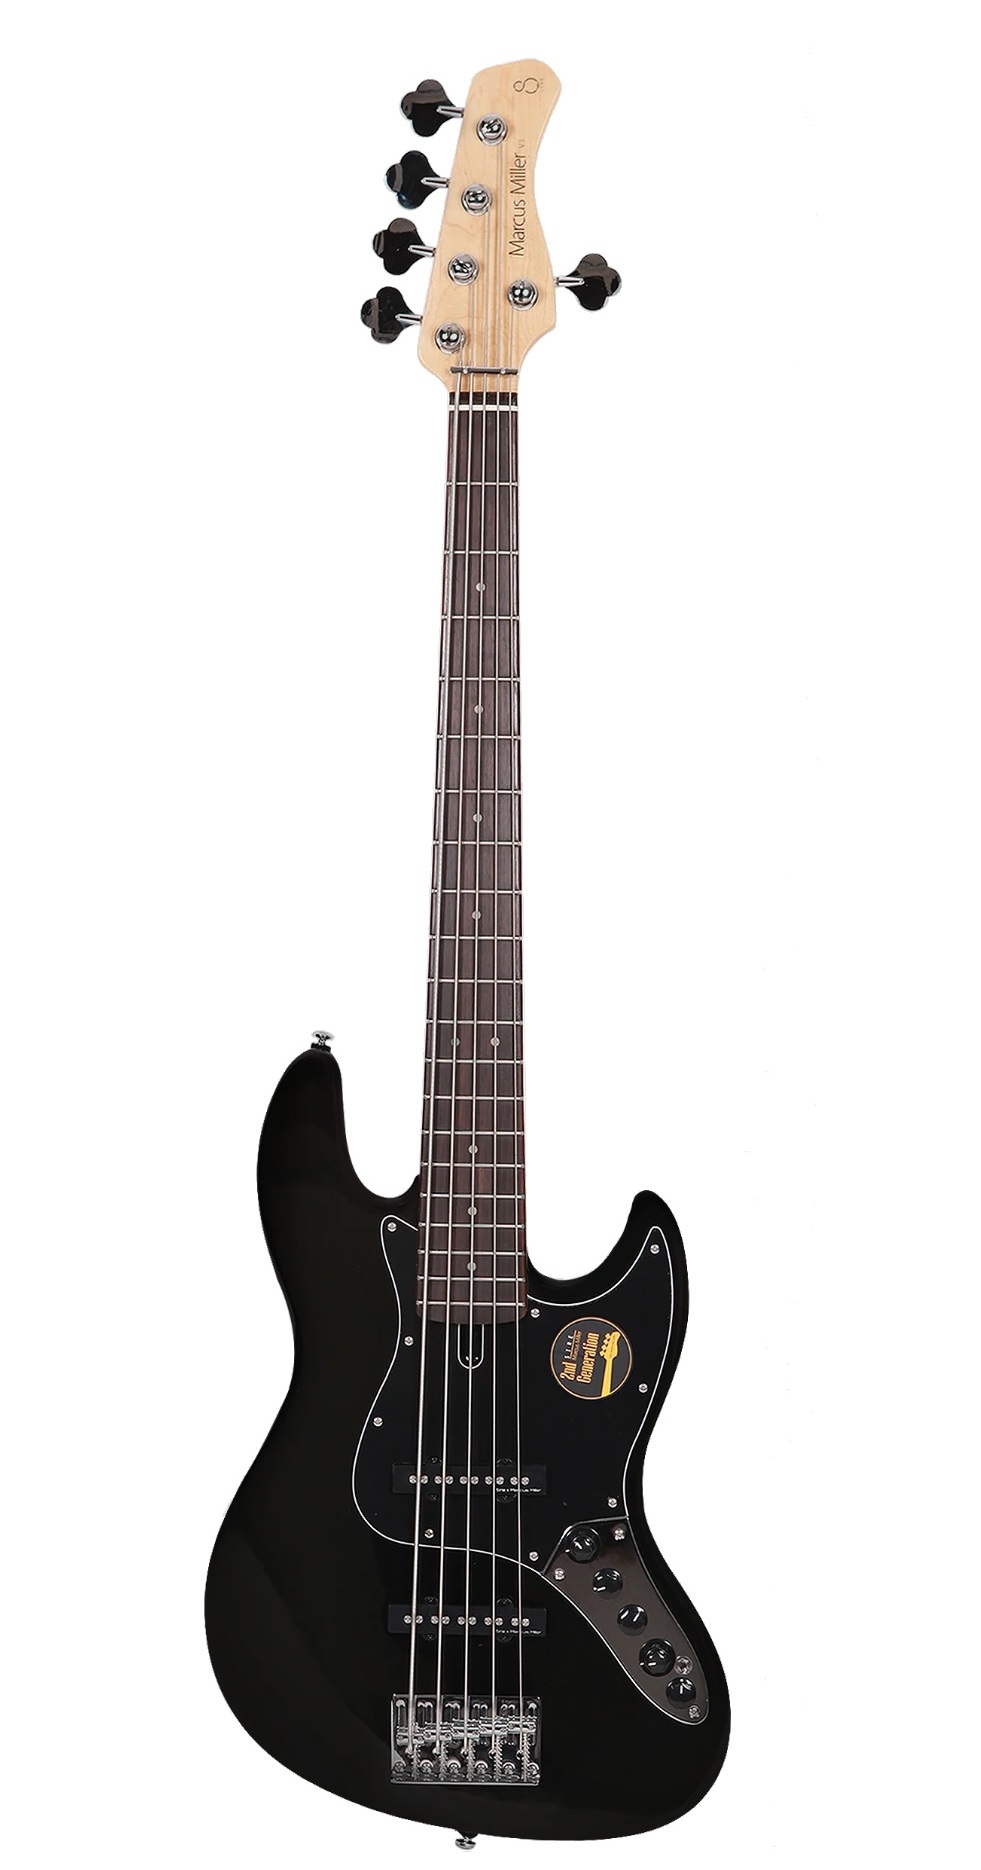 Бас-гитары Sire V3-5 (2nd Gen) BK набор для создания украшений яркие бусины 21 бусин 4 вида фурнитуры ножницы